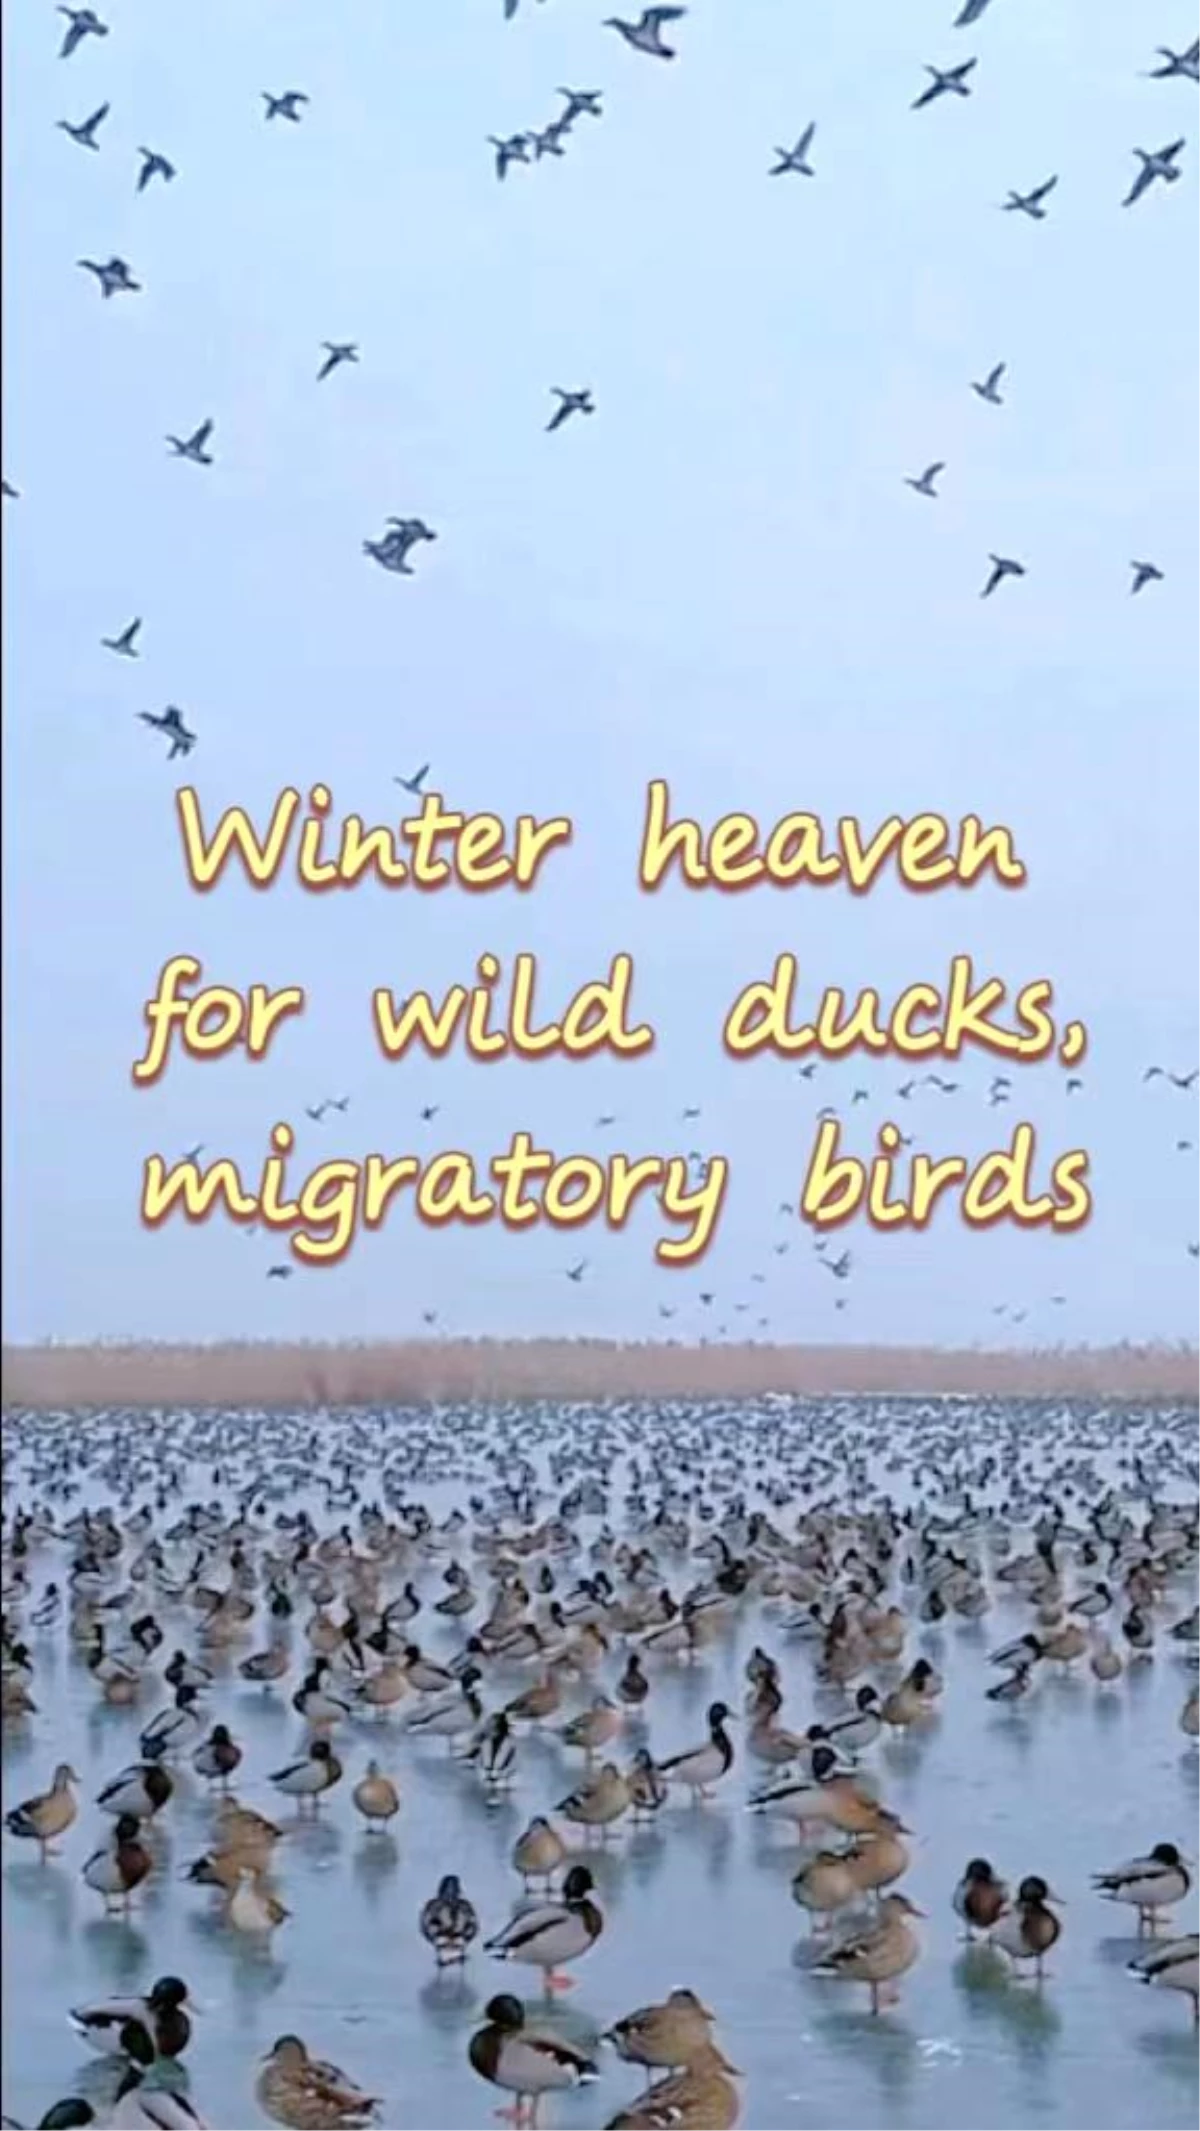 Göldeki yaban ördekleri ve göçmen kuşların çeşitli görüntüleri